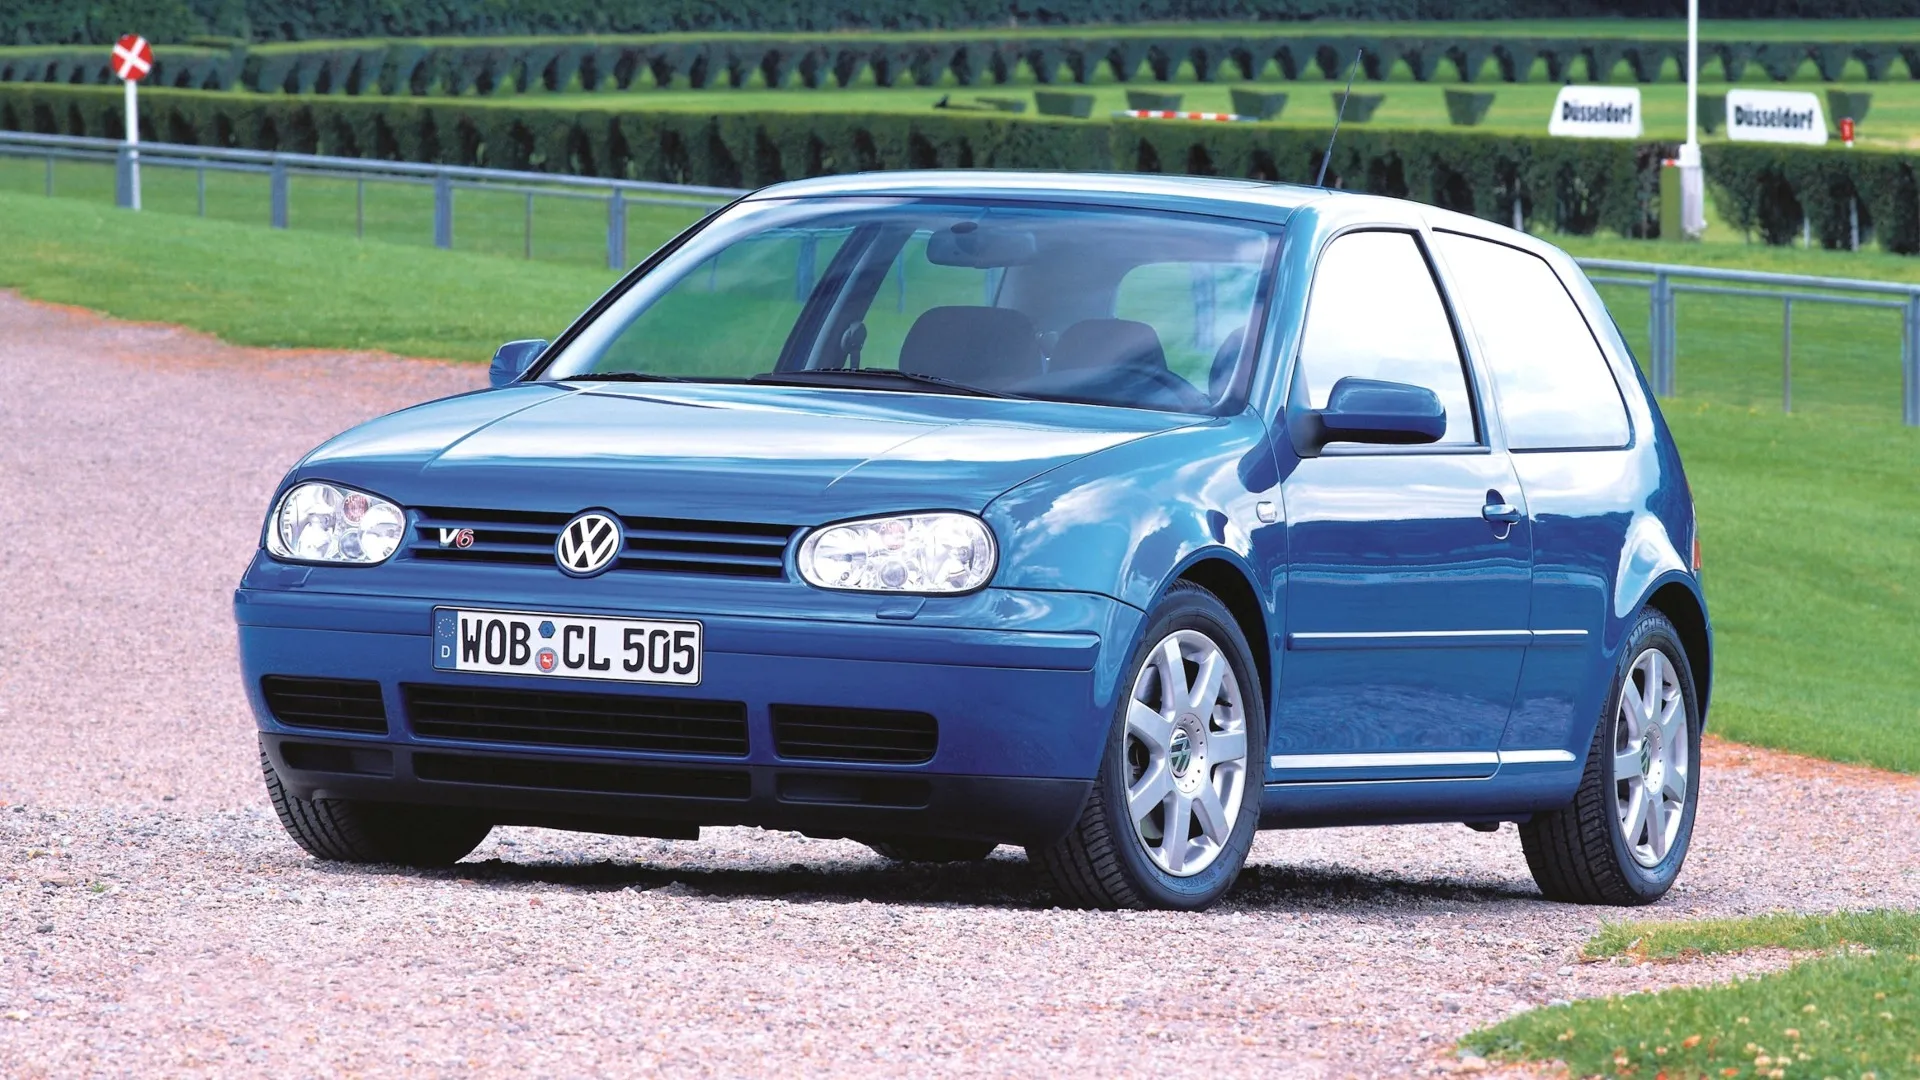 Coche del día: Volkswagen Golf V6 4MOTION